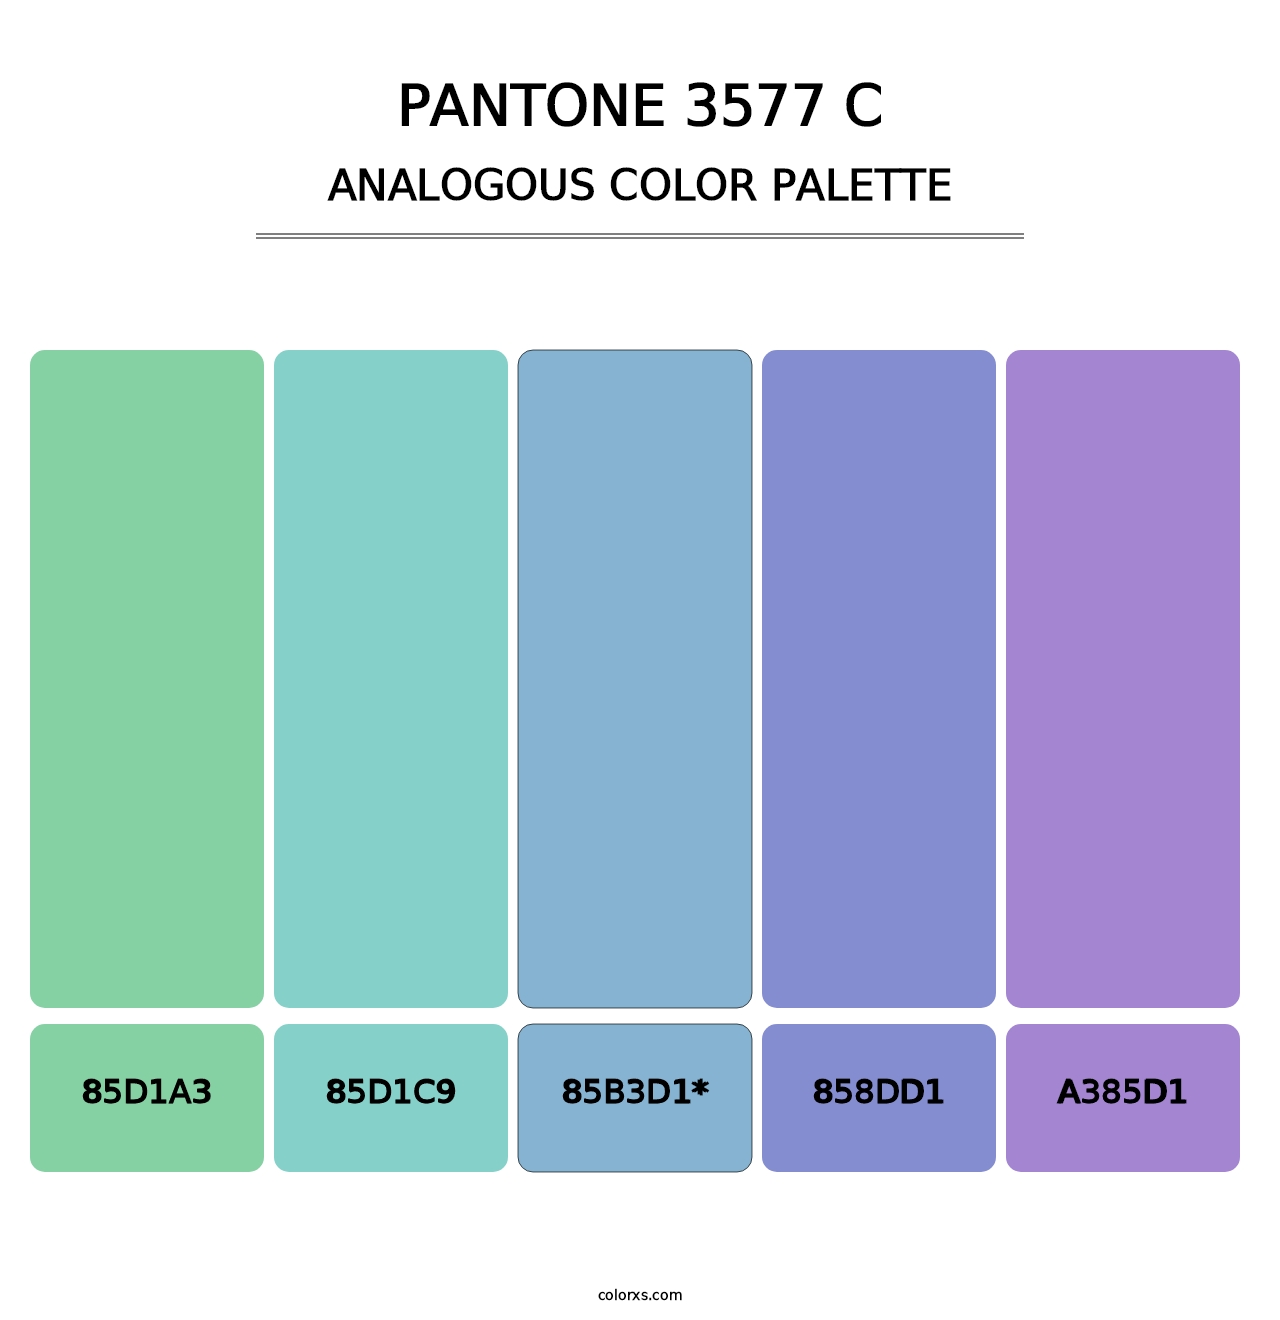 PANTONE 3577 C - Analogous Color Palette